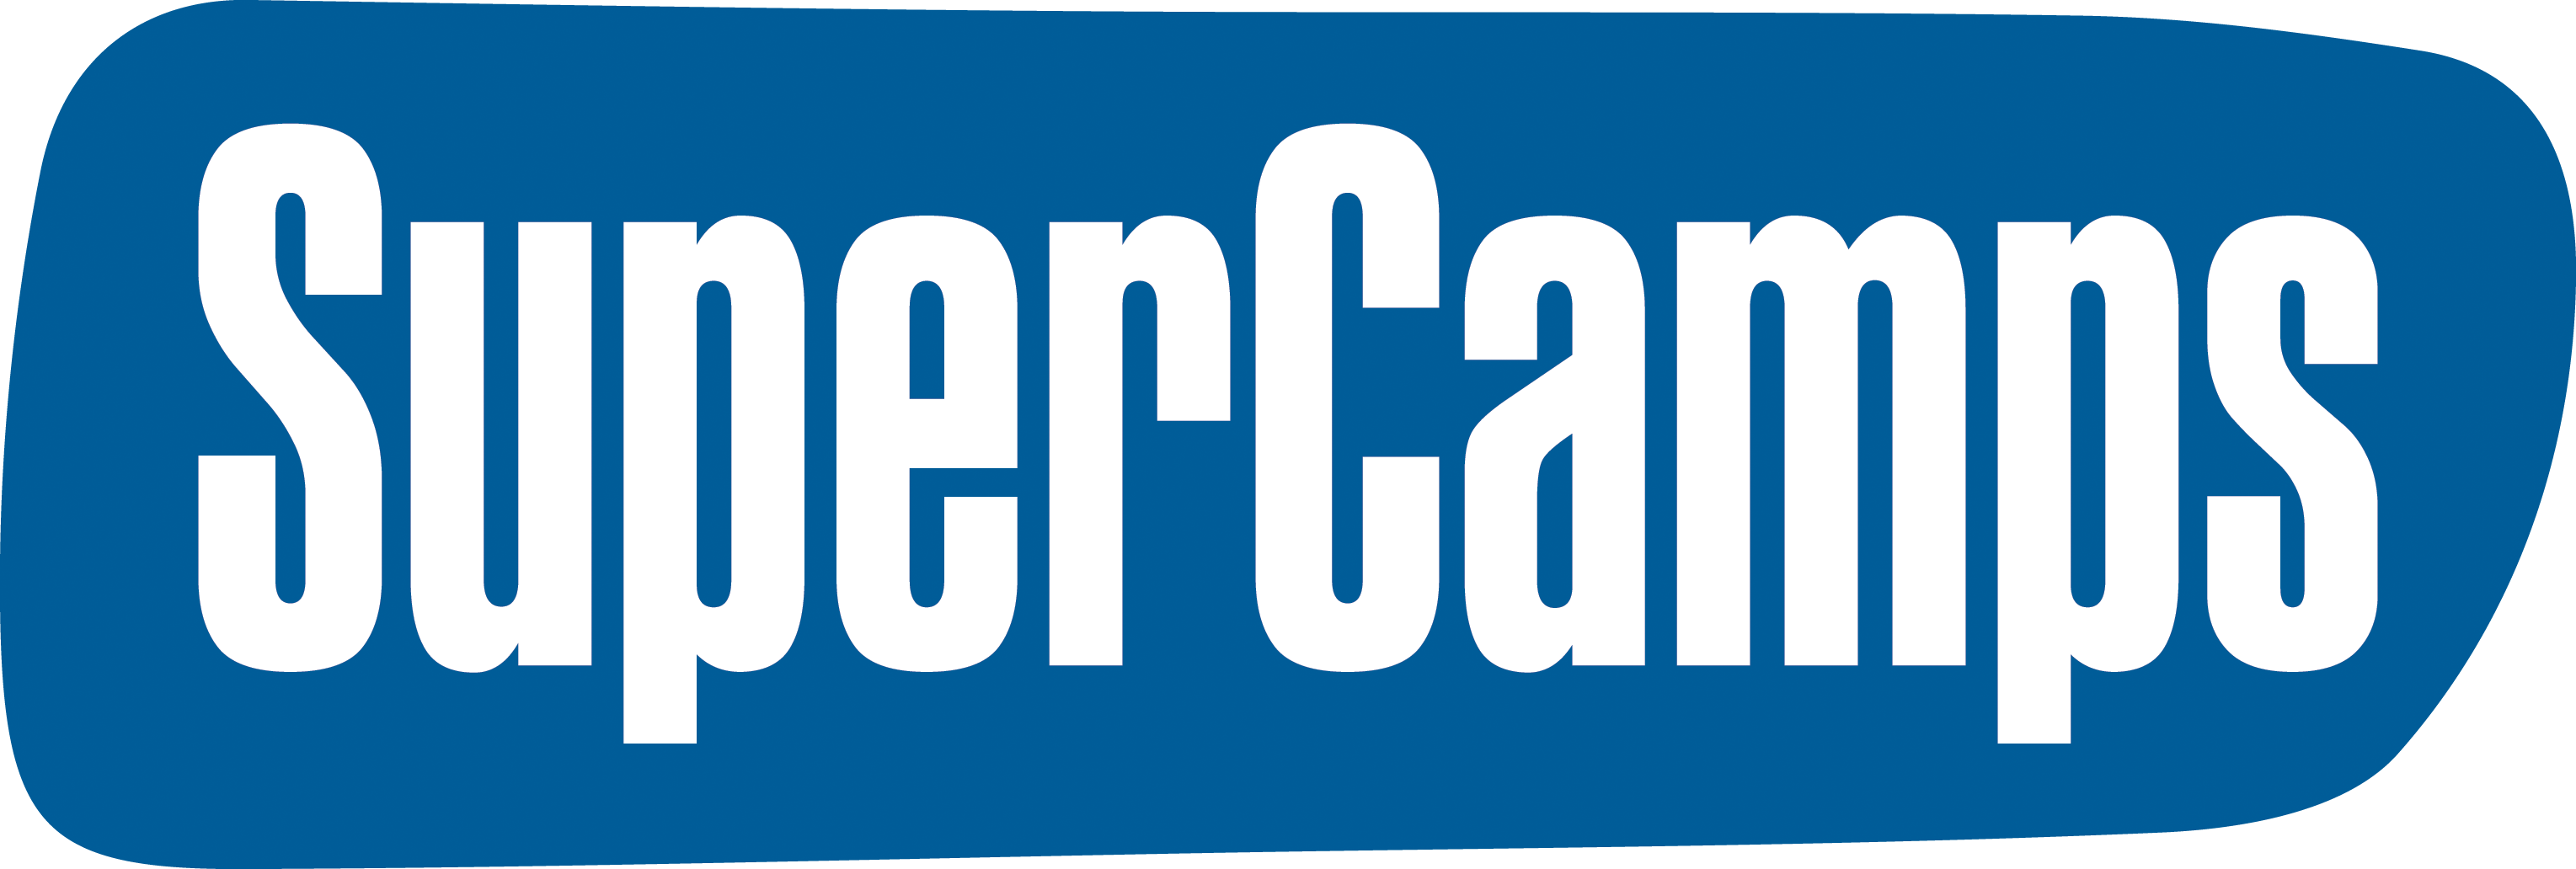 Super camps logo